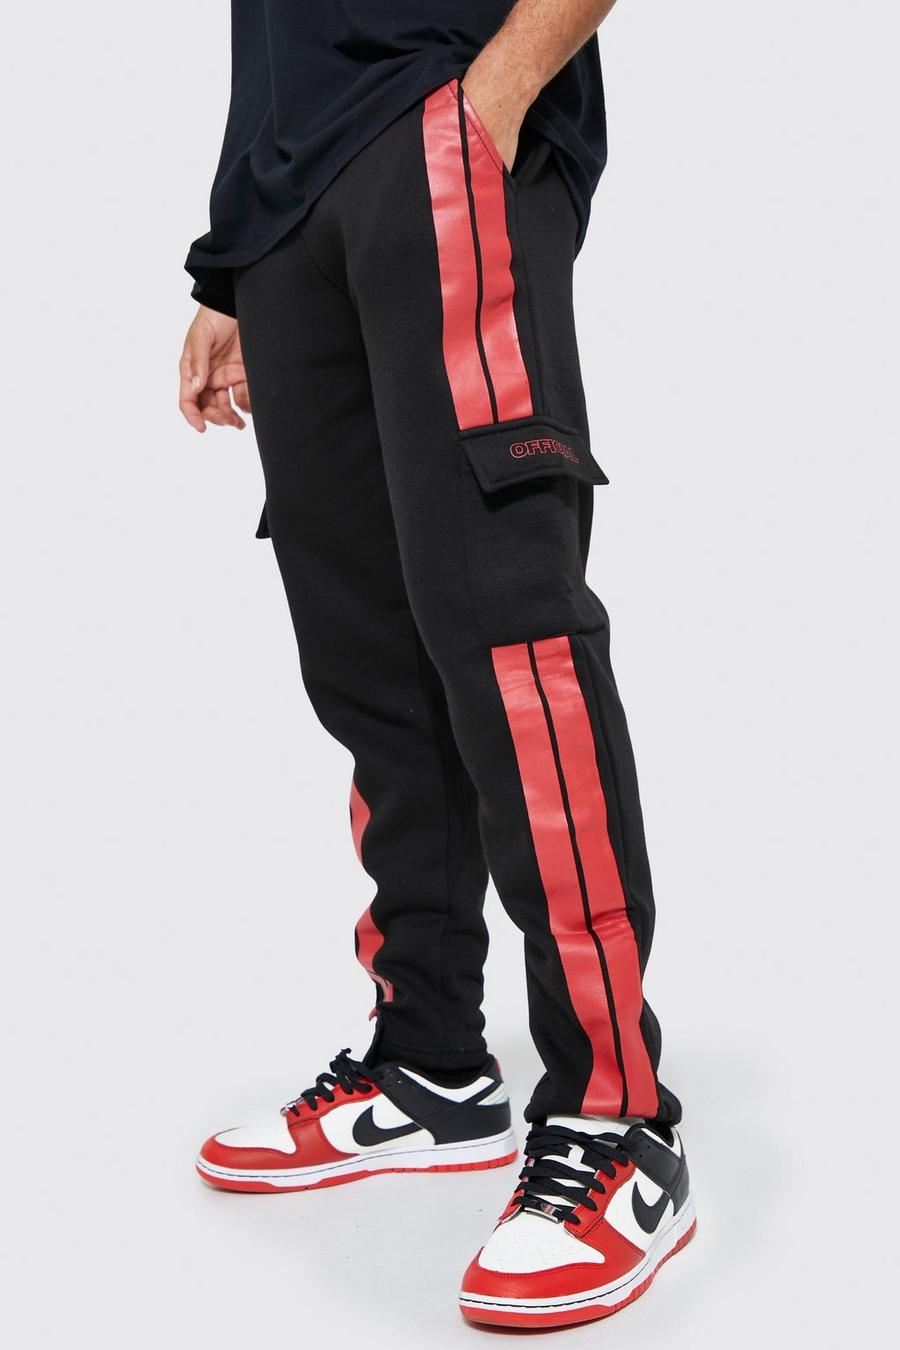 Pantaloni tuta Official stile Cargo Slim Fit con strisce laterali, Black nero